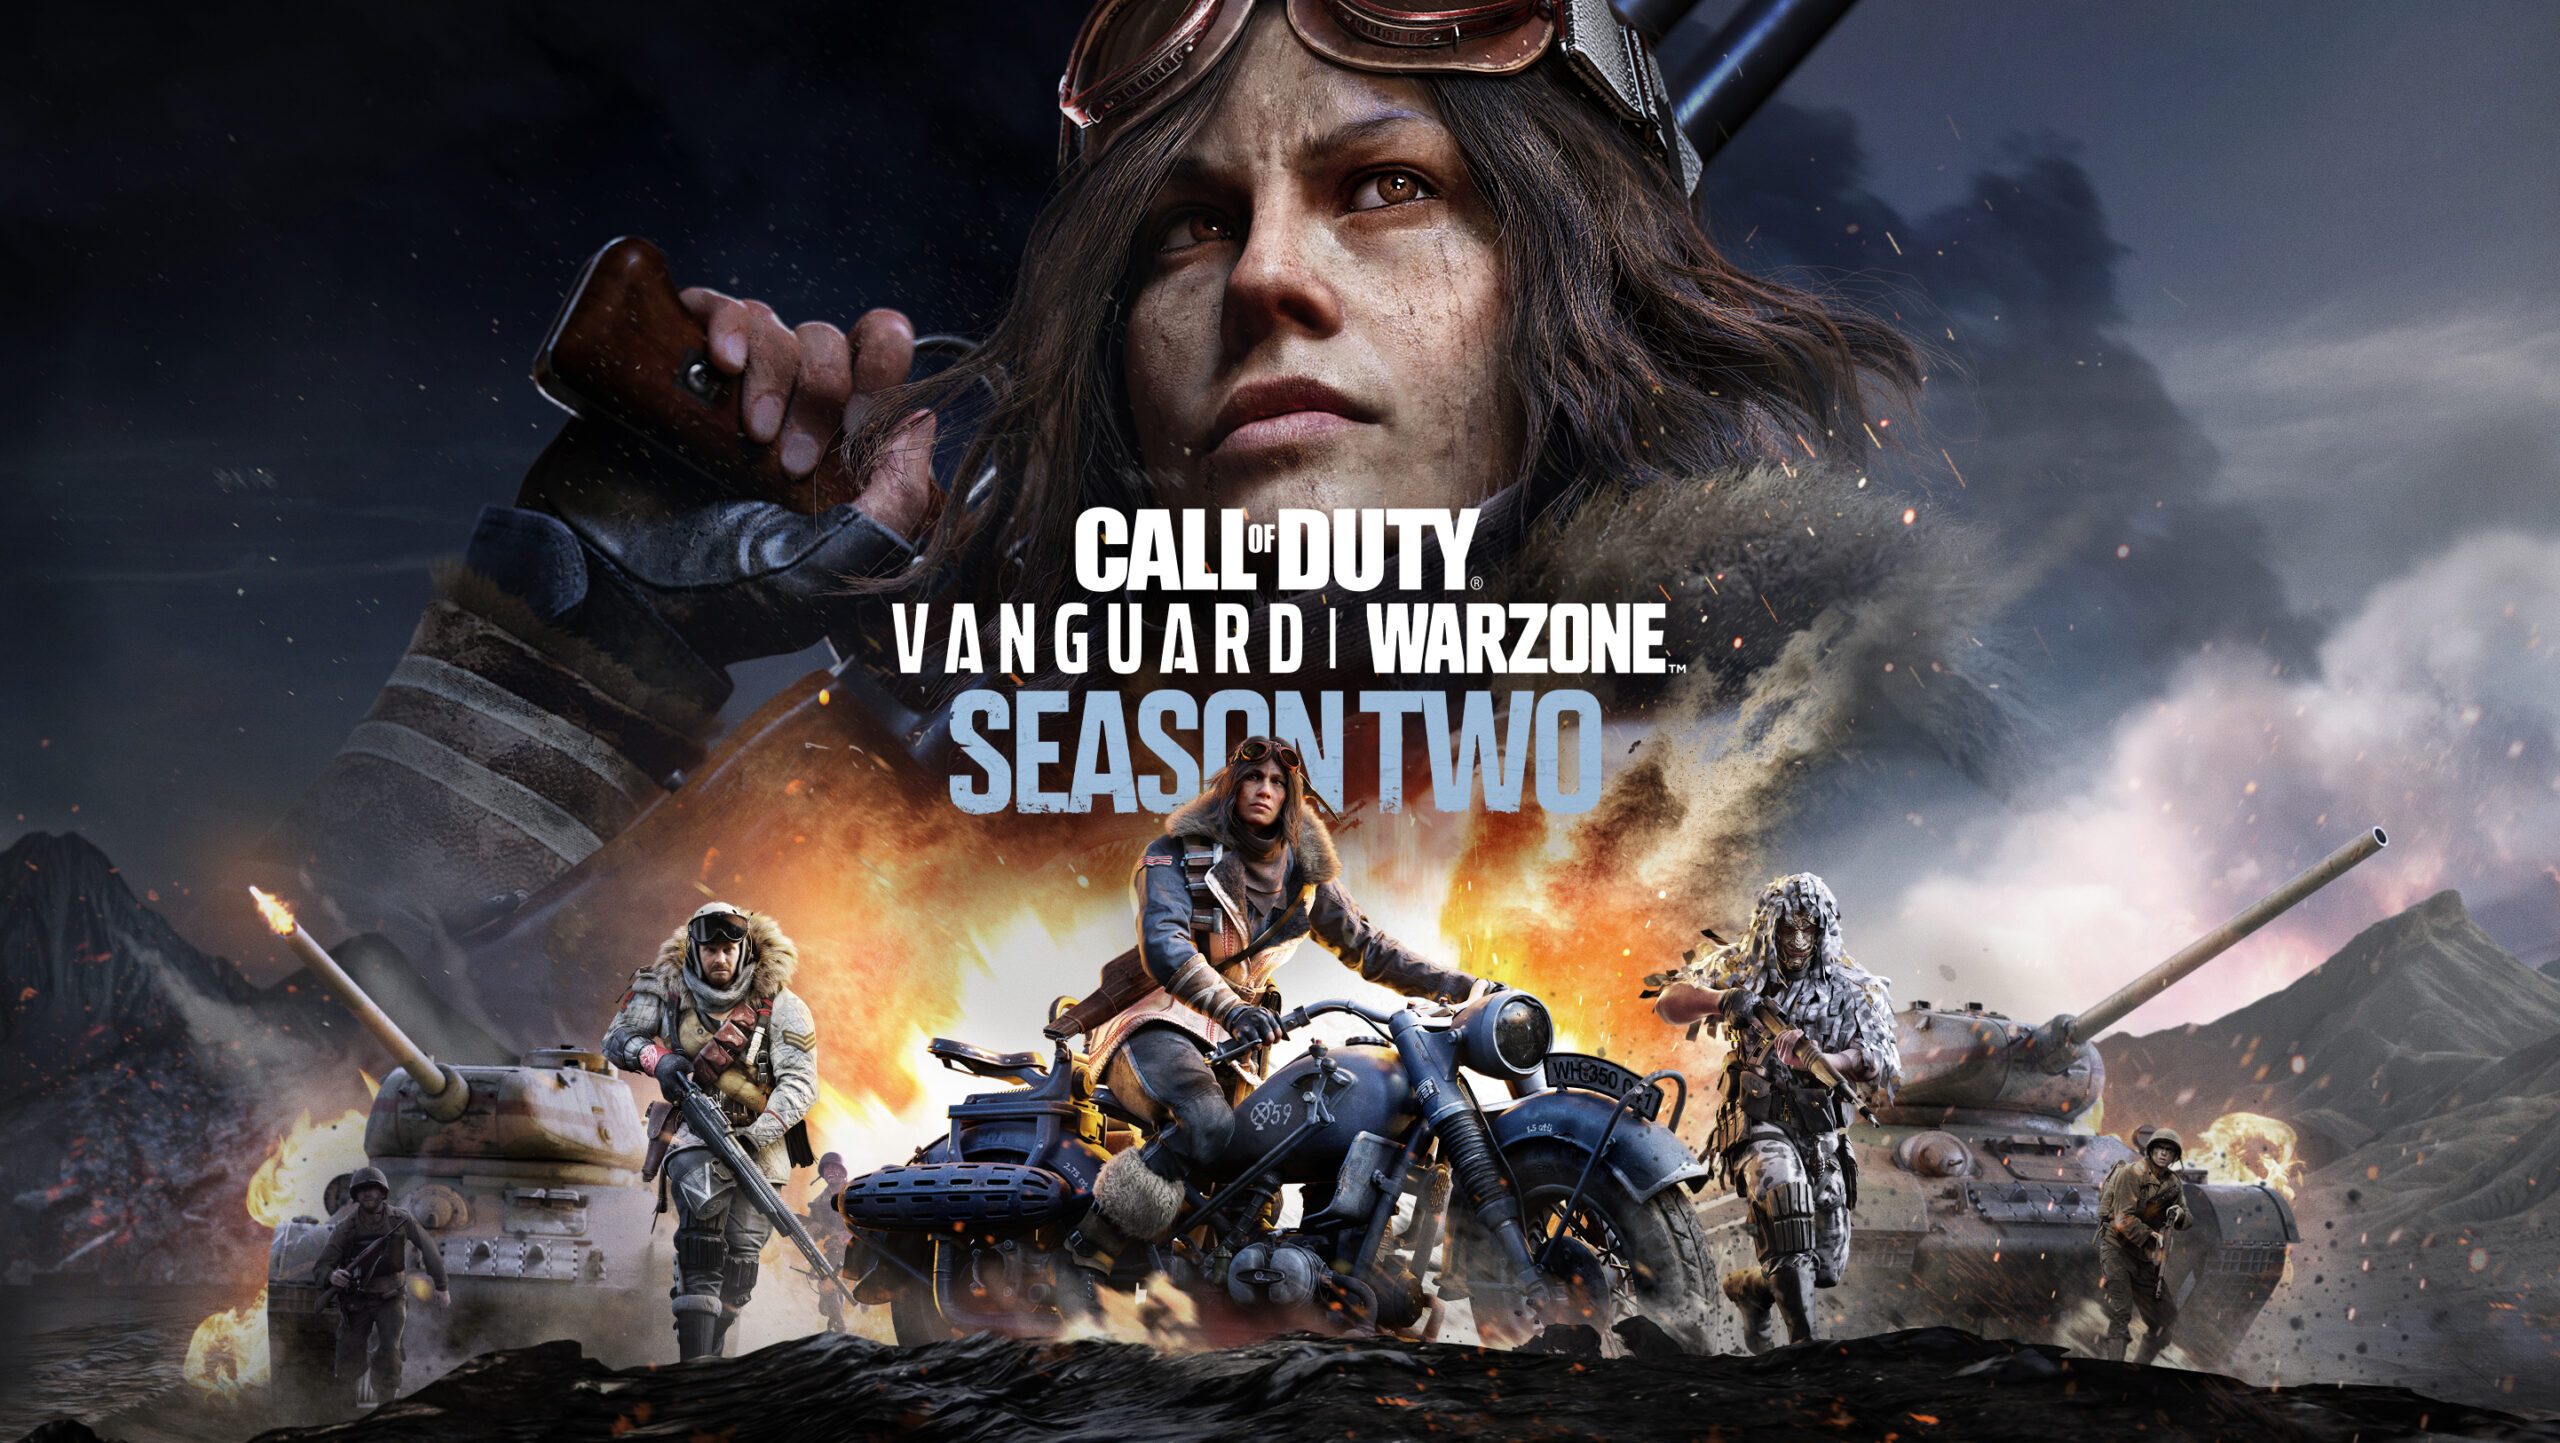 Vanguard and Warzone Season Two – PlayStation.Blog